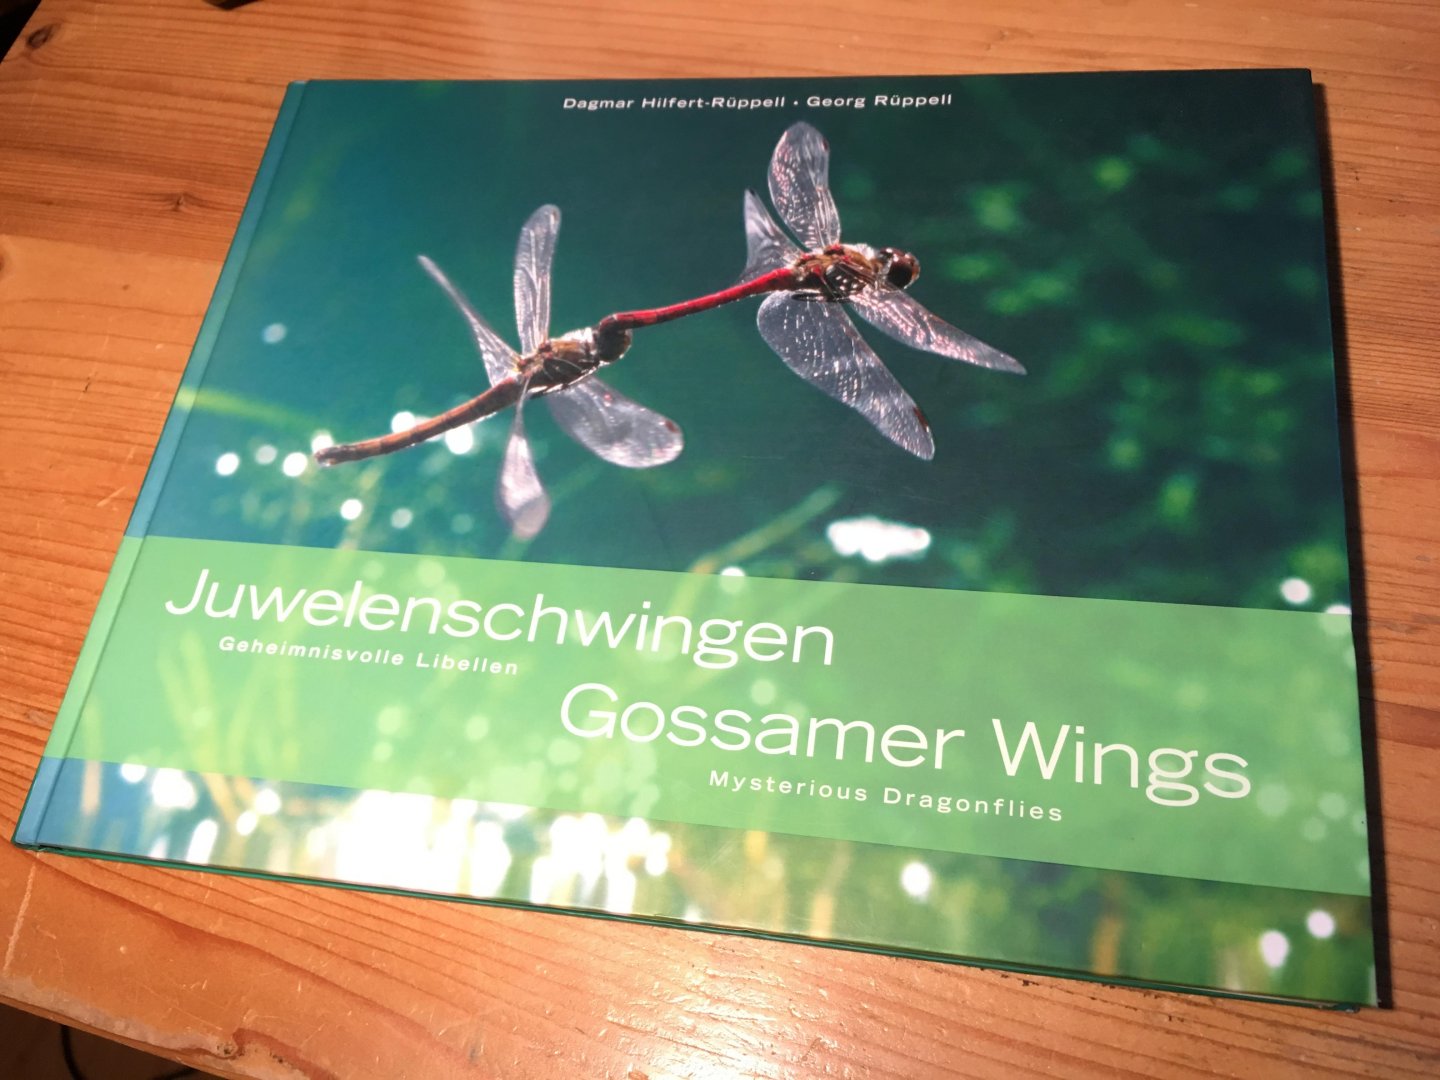 Hilfert-Rüppell, Dagmar & Georg - Gossamer Wings - Mysterious Dragonflies - Juwelenschwingen